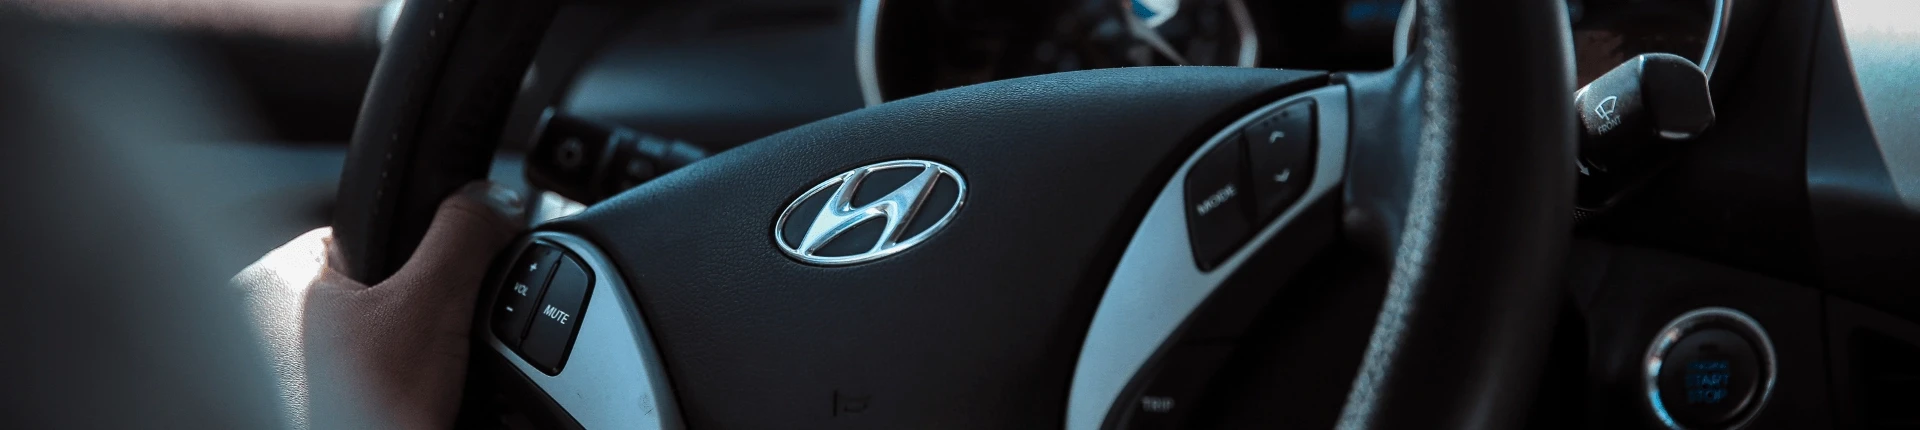 Hyundai Araçları Hakkında Genel Bilgiler | Miniyol